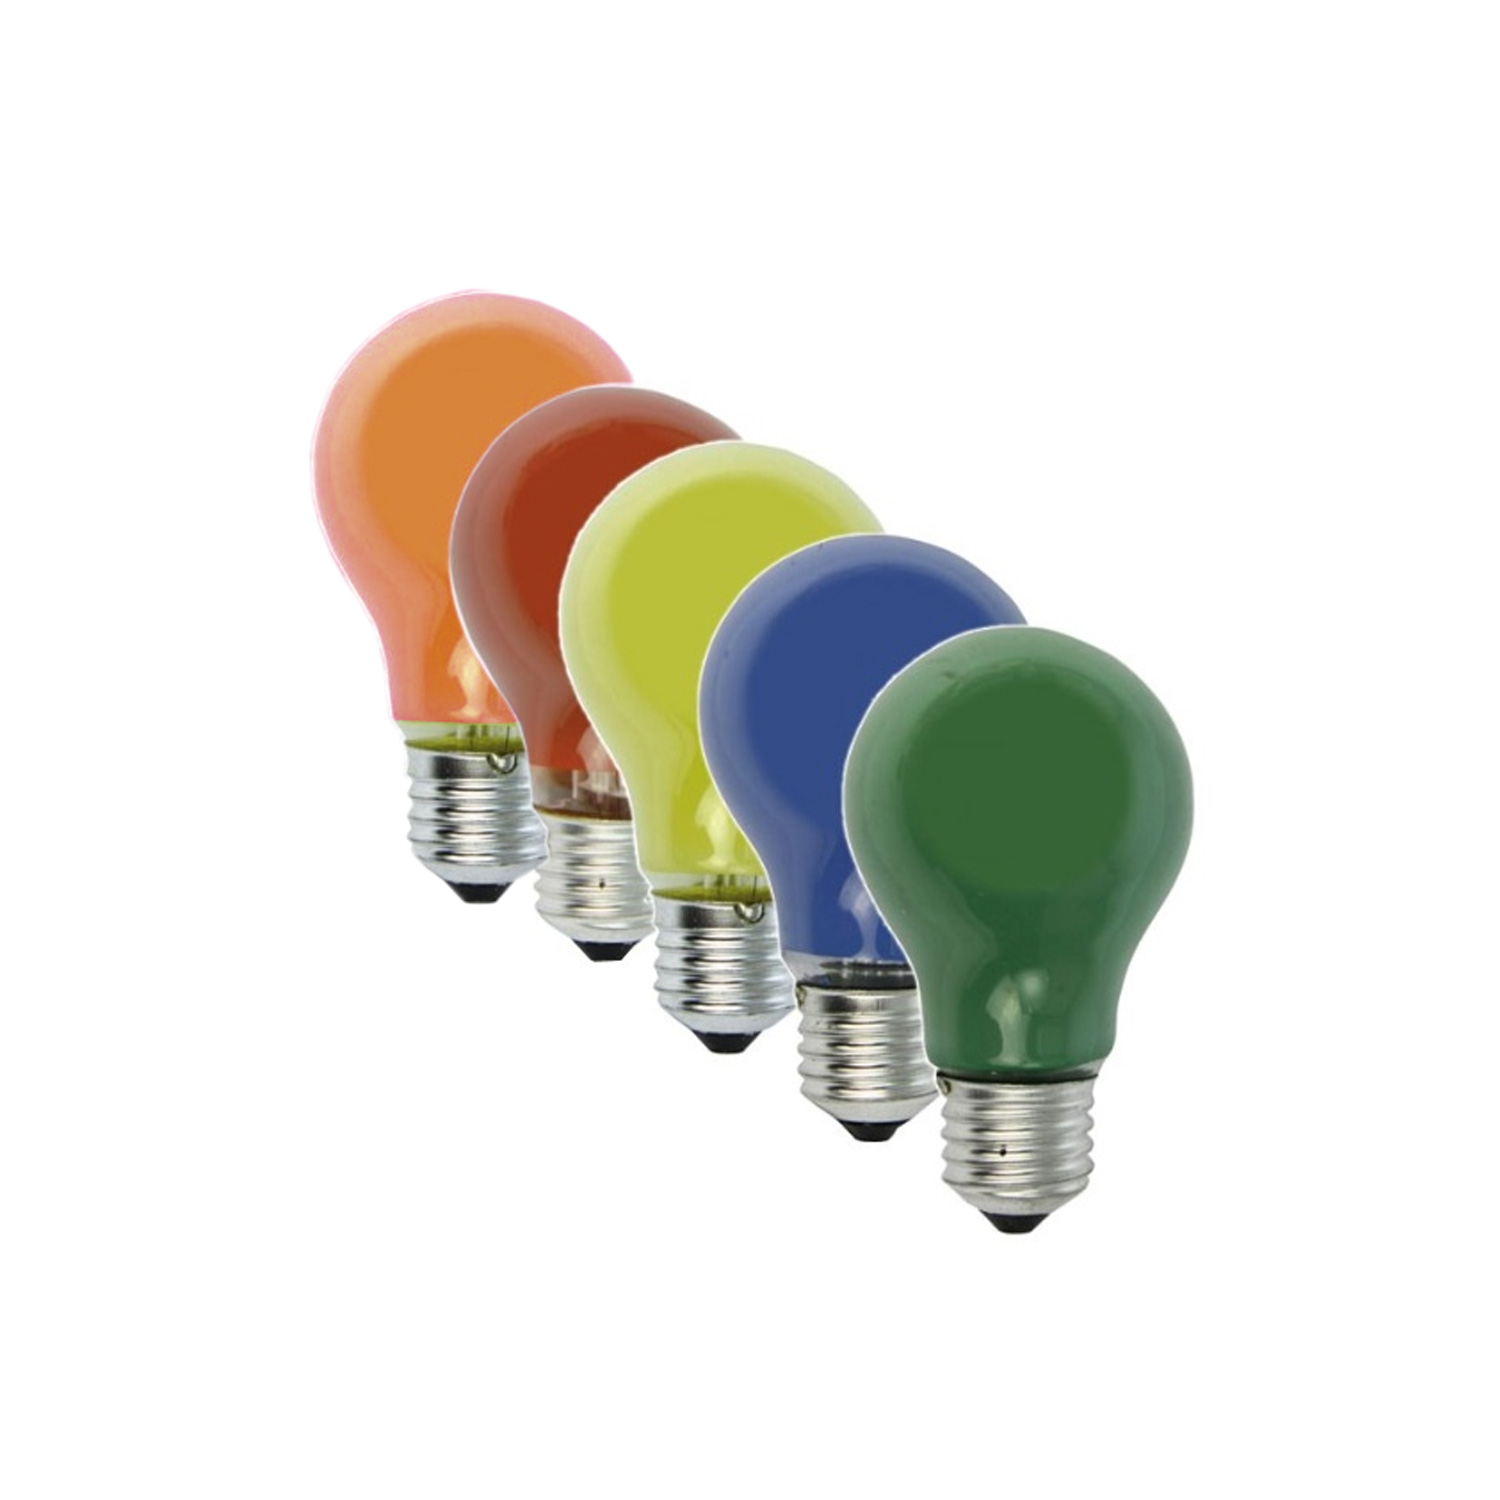 Illu-/Partylichterkette | E27-Fassungen | Made in Germany | mit farbigen Glühlampen | 5m | 5x E27-Fassungen